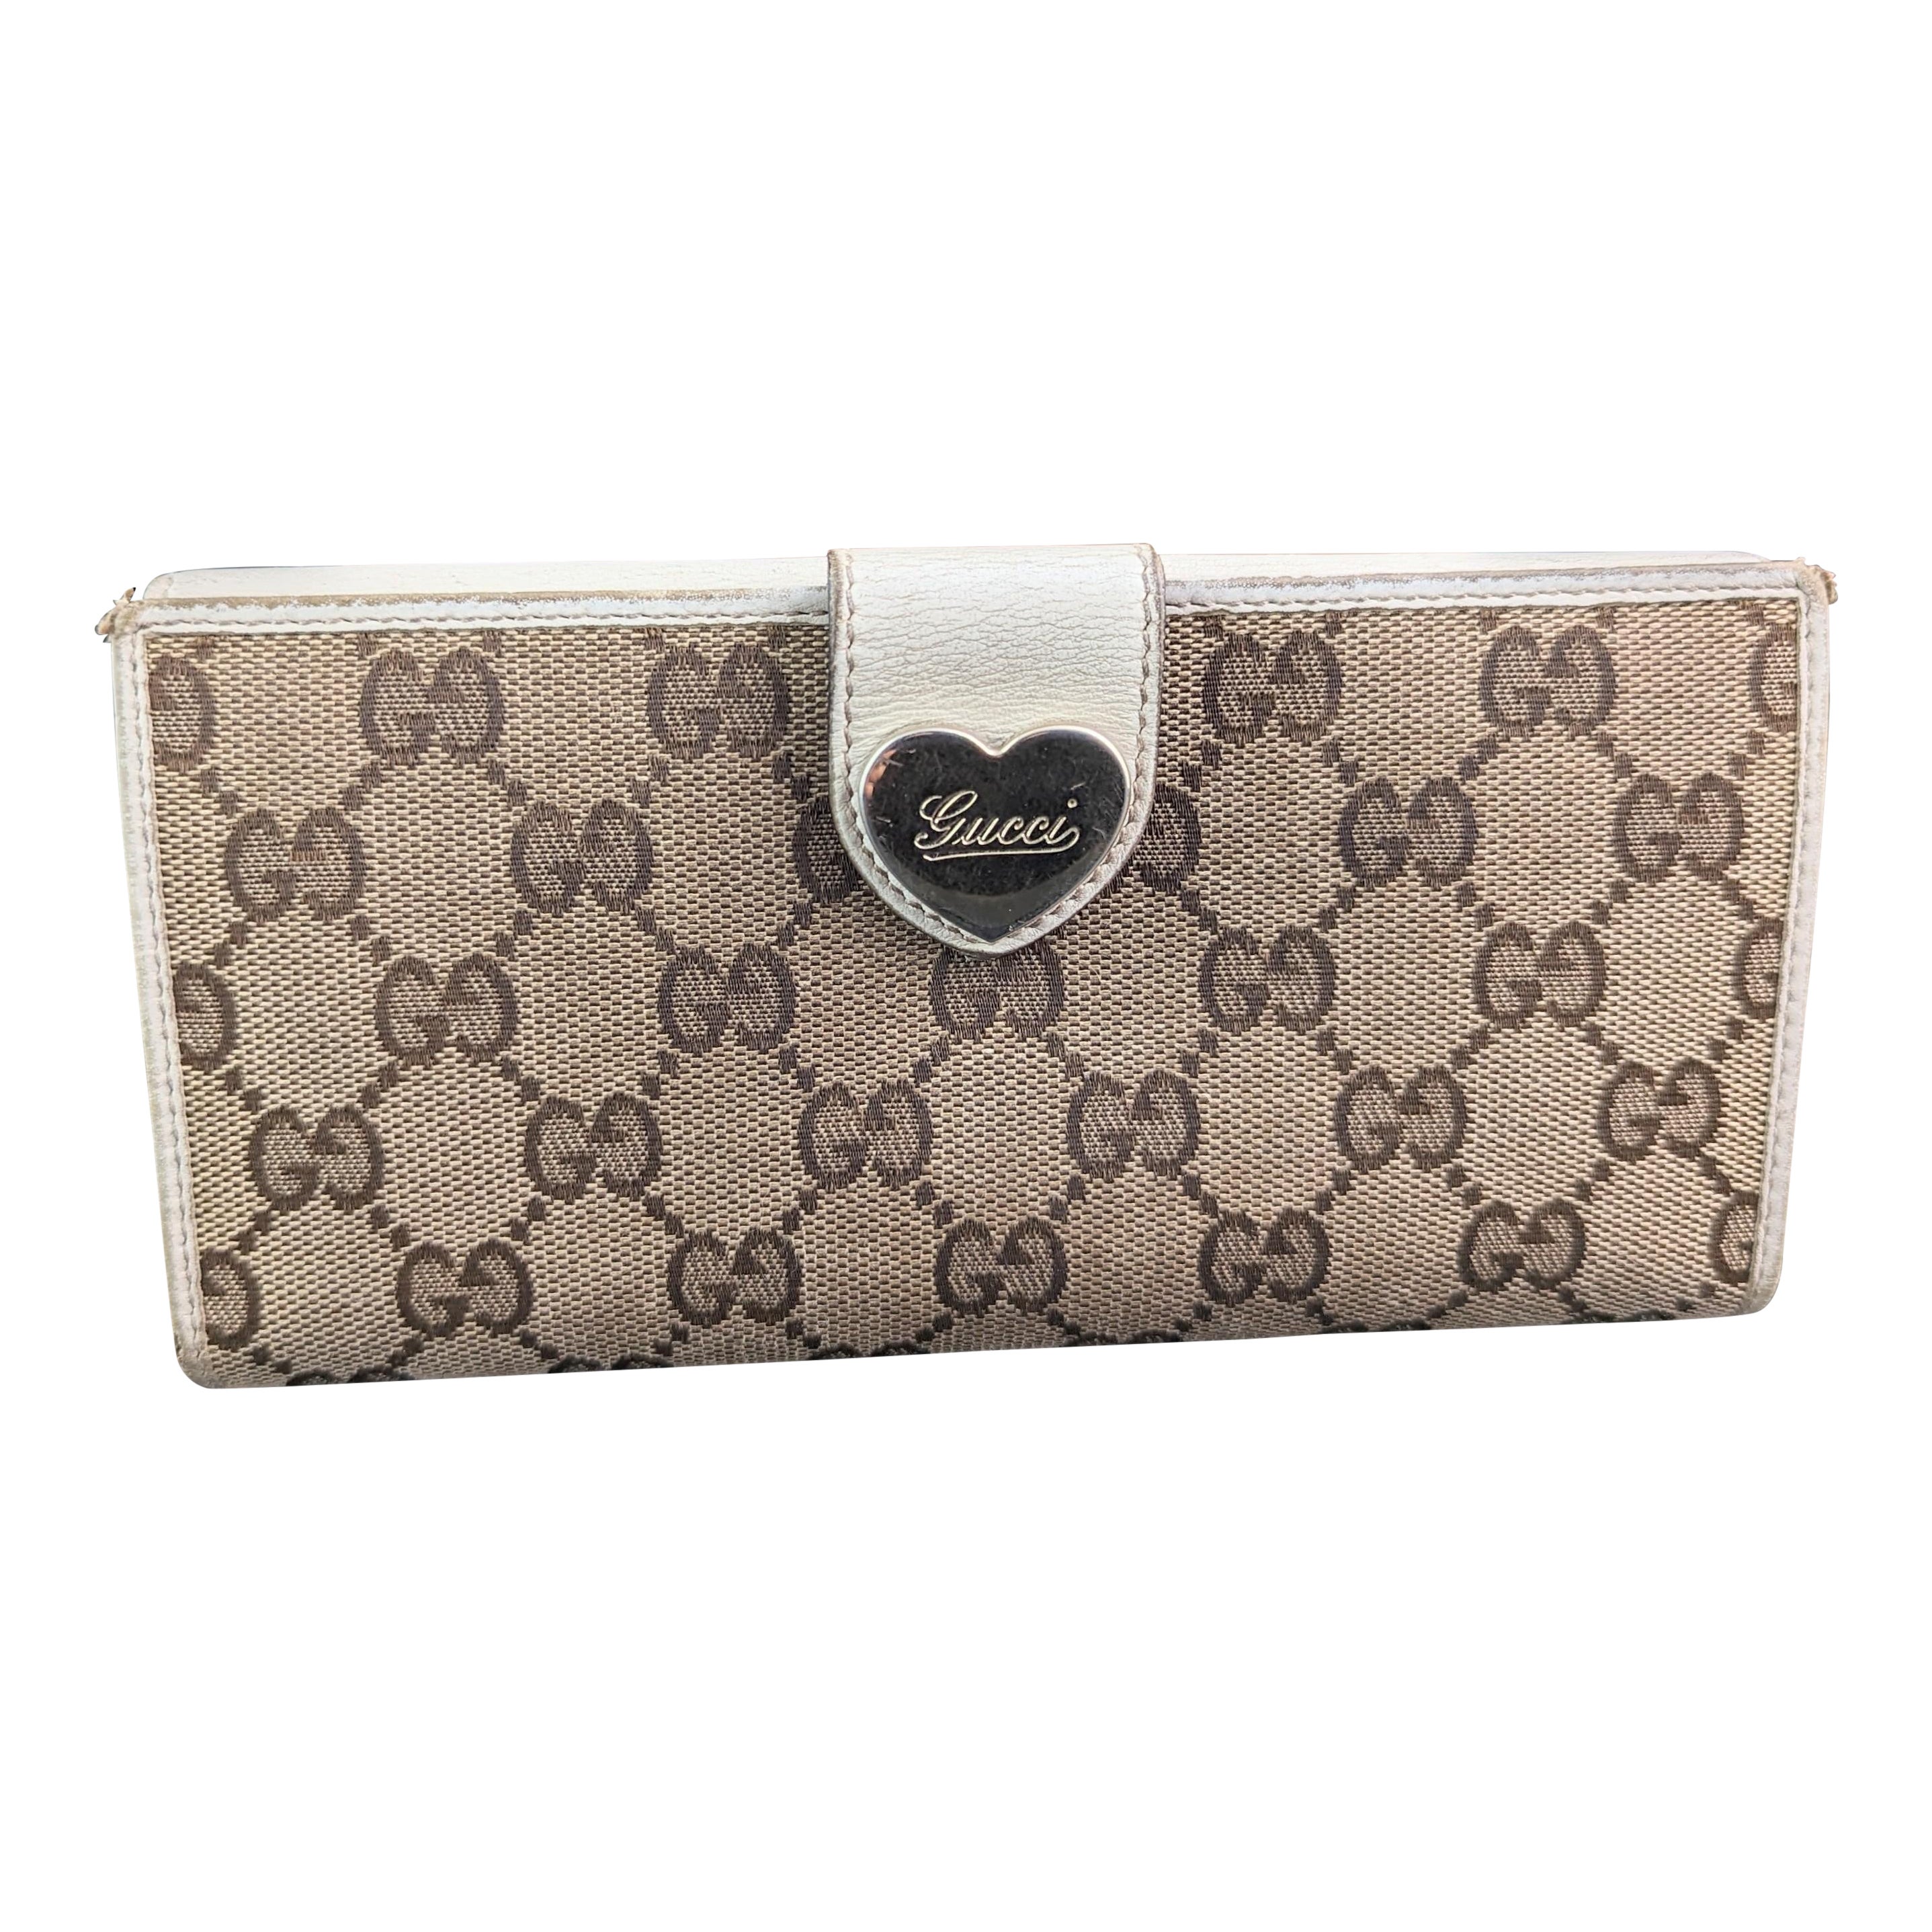 Vintage Gucci GG Monogramm-Damenhandtasche, kastenförmig 